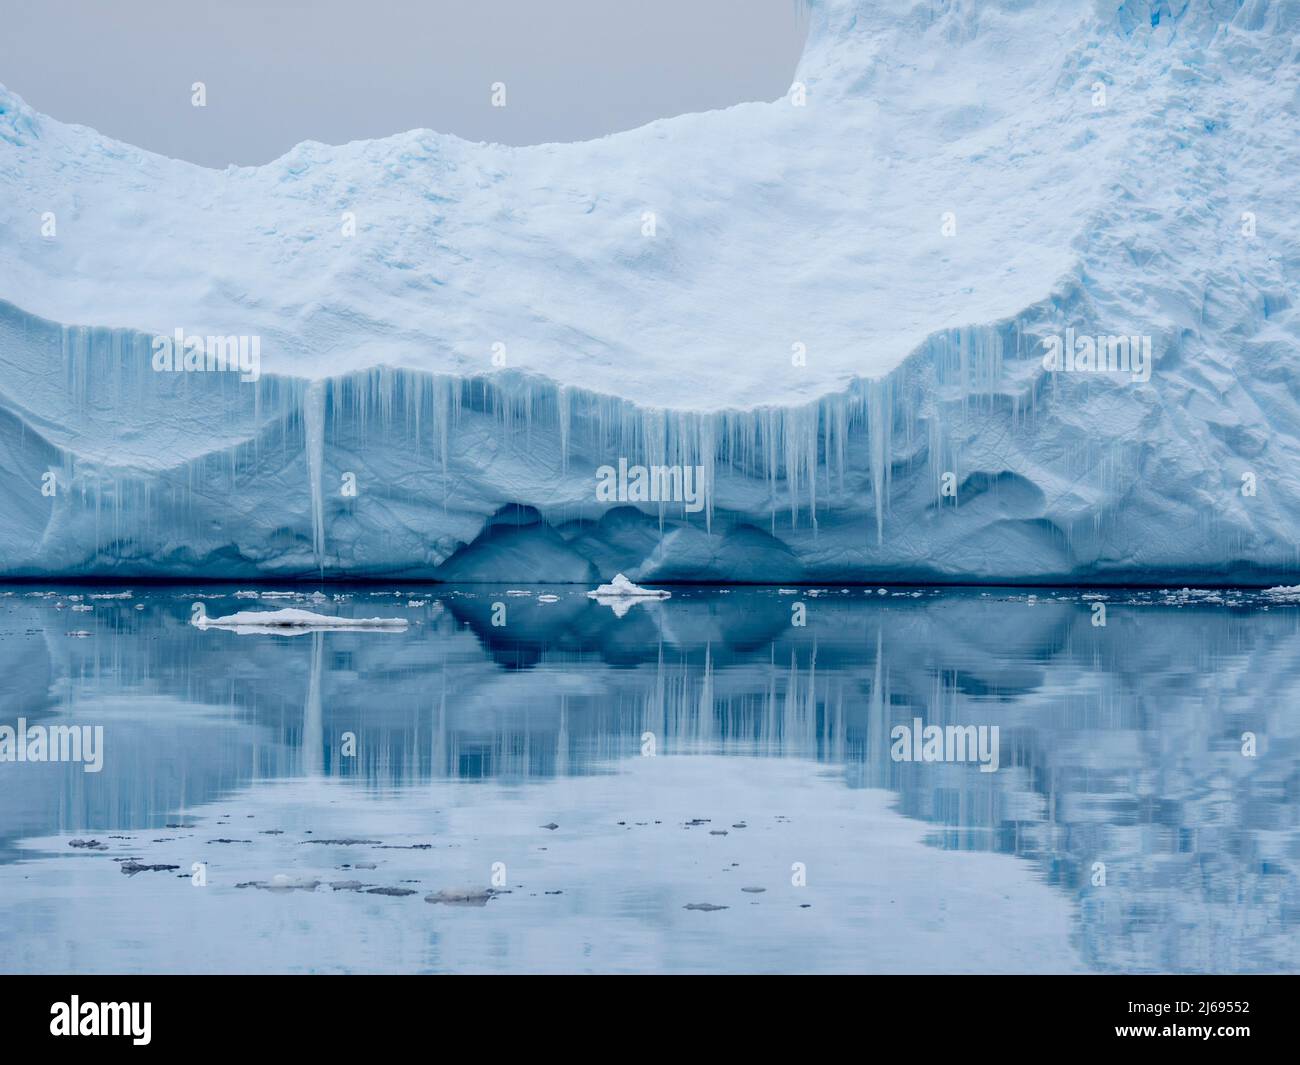 Großer Eisberg, der auf einem Riff auf der Insel Peter I, dem Bellingshausener Meer, der Antarktis, Polarregionen, gegründet wurde Stockfoto